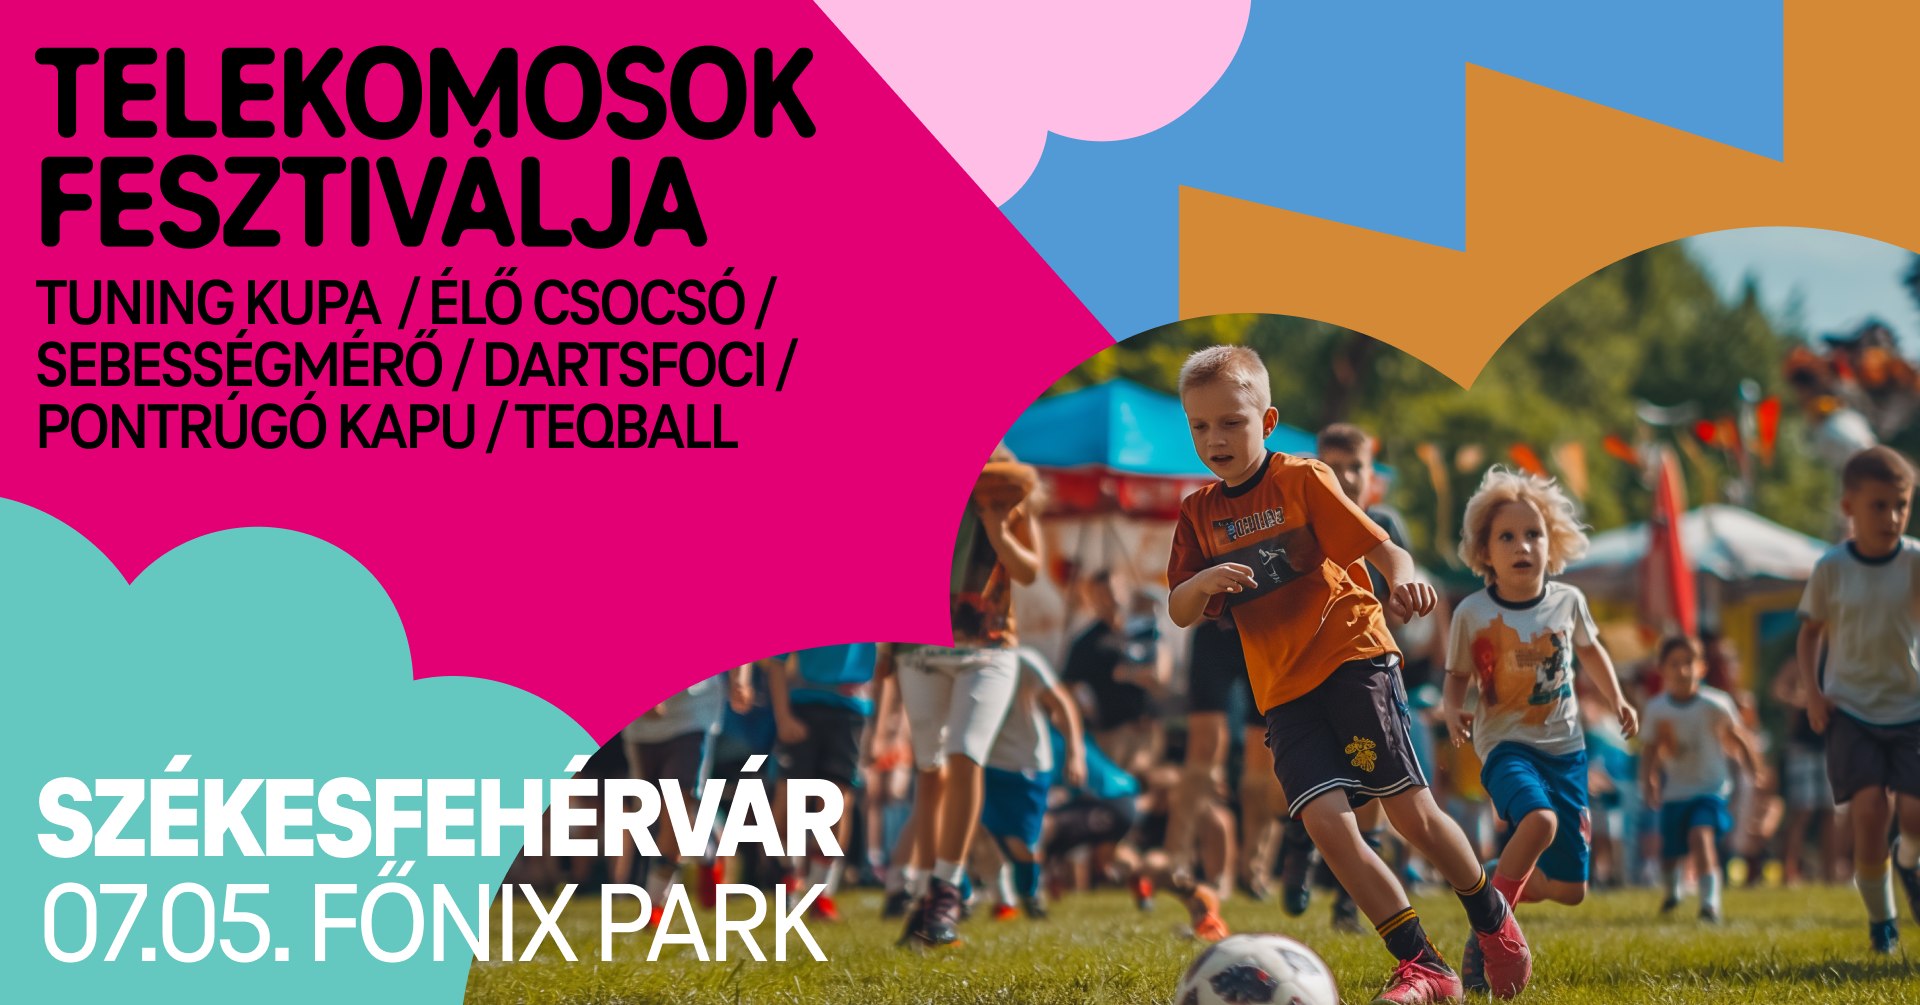 Családi focis program lesz július 5-én pénteken a Főnix Parkban